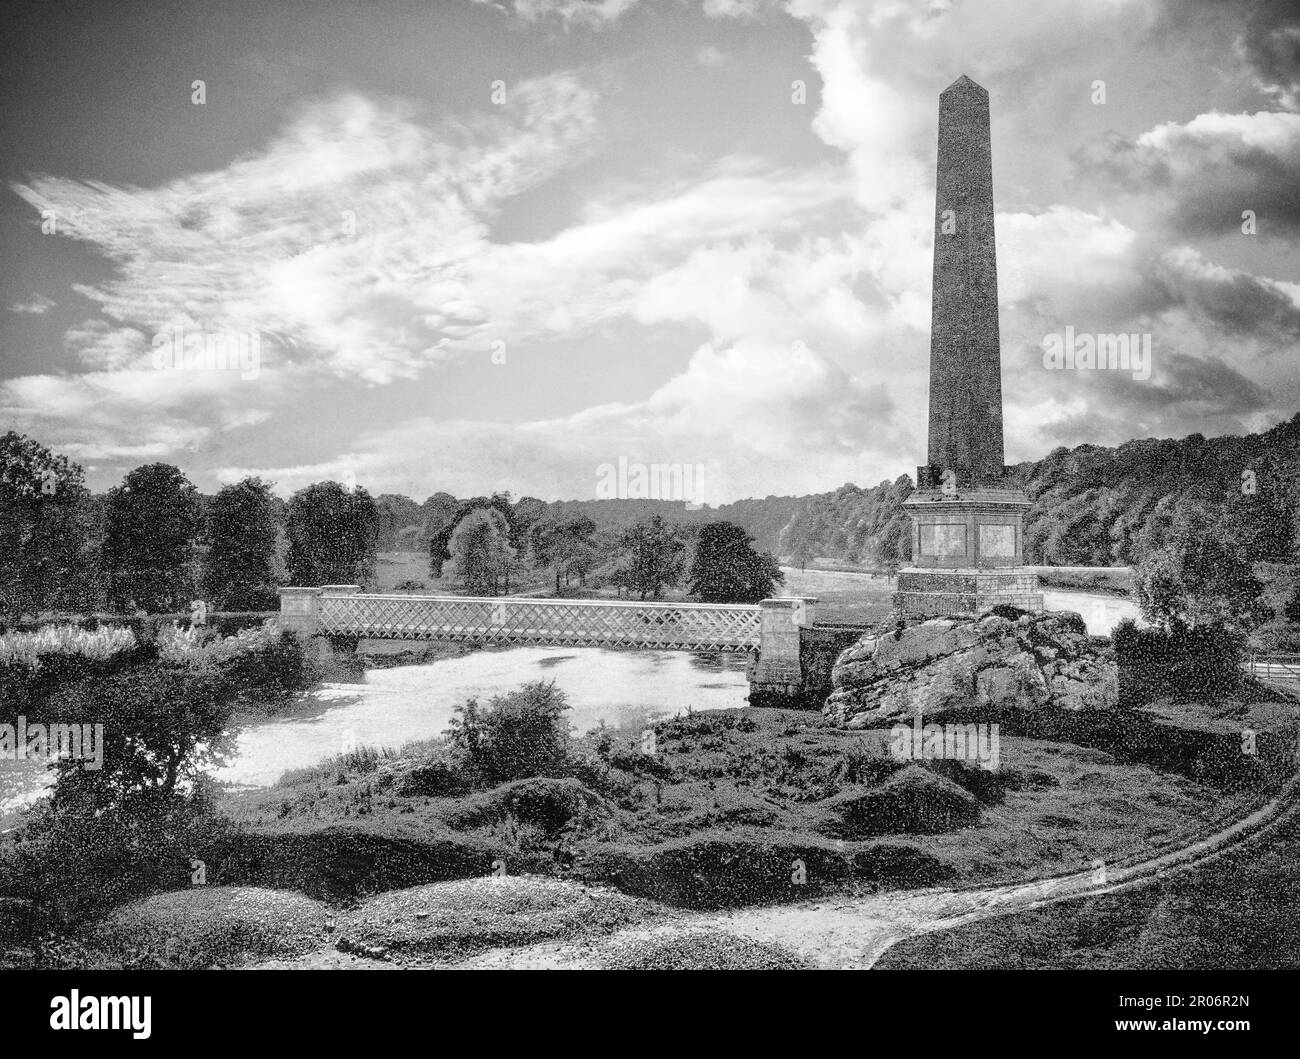 Una vista della fine del 19th ° secolo dell'Obelisco Boyne, noto anche come Obelisco di Re Guglielmo. Eretto per commemorare la vittoria di Guglielmo d'Orange su Re Giacomo II nella Battaglia dei Boyne nel 1690, e si trovava a Oldbridge, vicino a Drogheda nella contea di Louth, Irlanda, nel punto in cui le forze di Guglielmo attraversavano il fiume Boyne per impegnare le forze di James. L'obelisco rimase fino al 31 maggio 1923, quando fu distrutto poco dopo la fine della guerra civile irlandese. Foto Stock